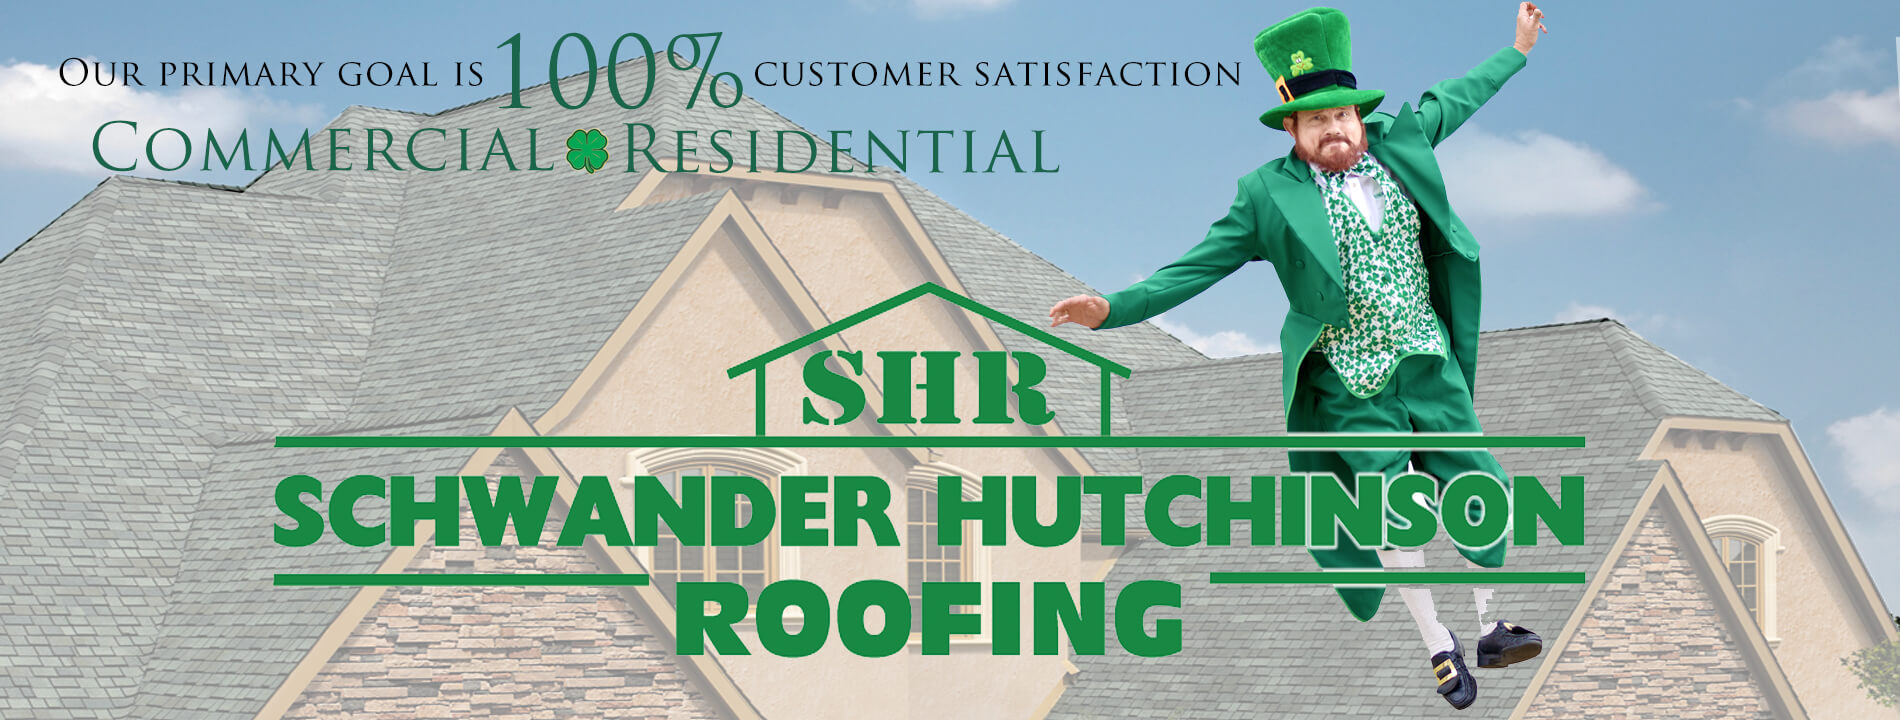 Schwander Hutchinson Roofing